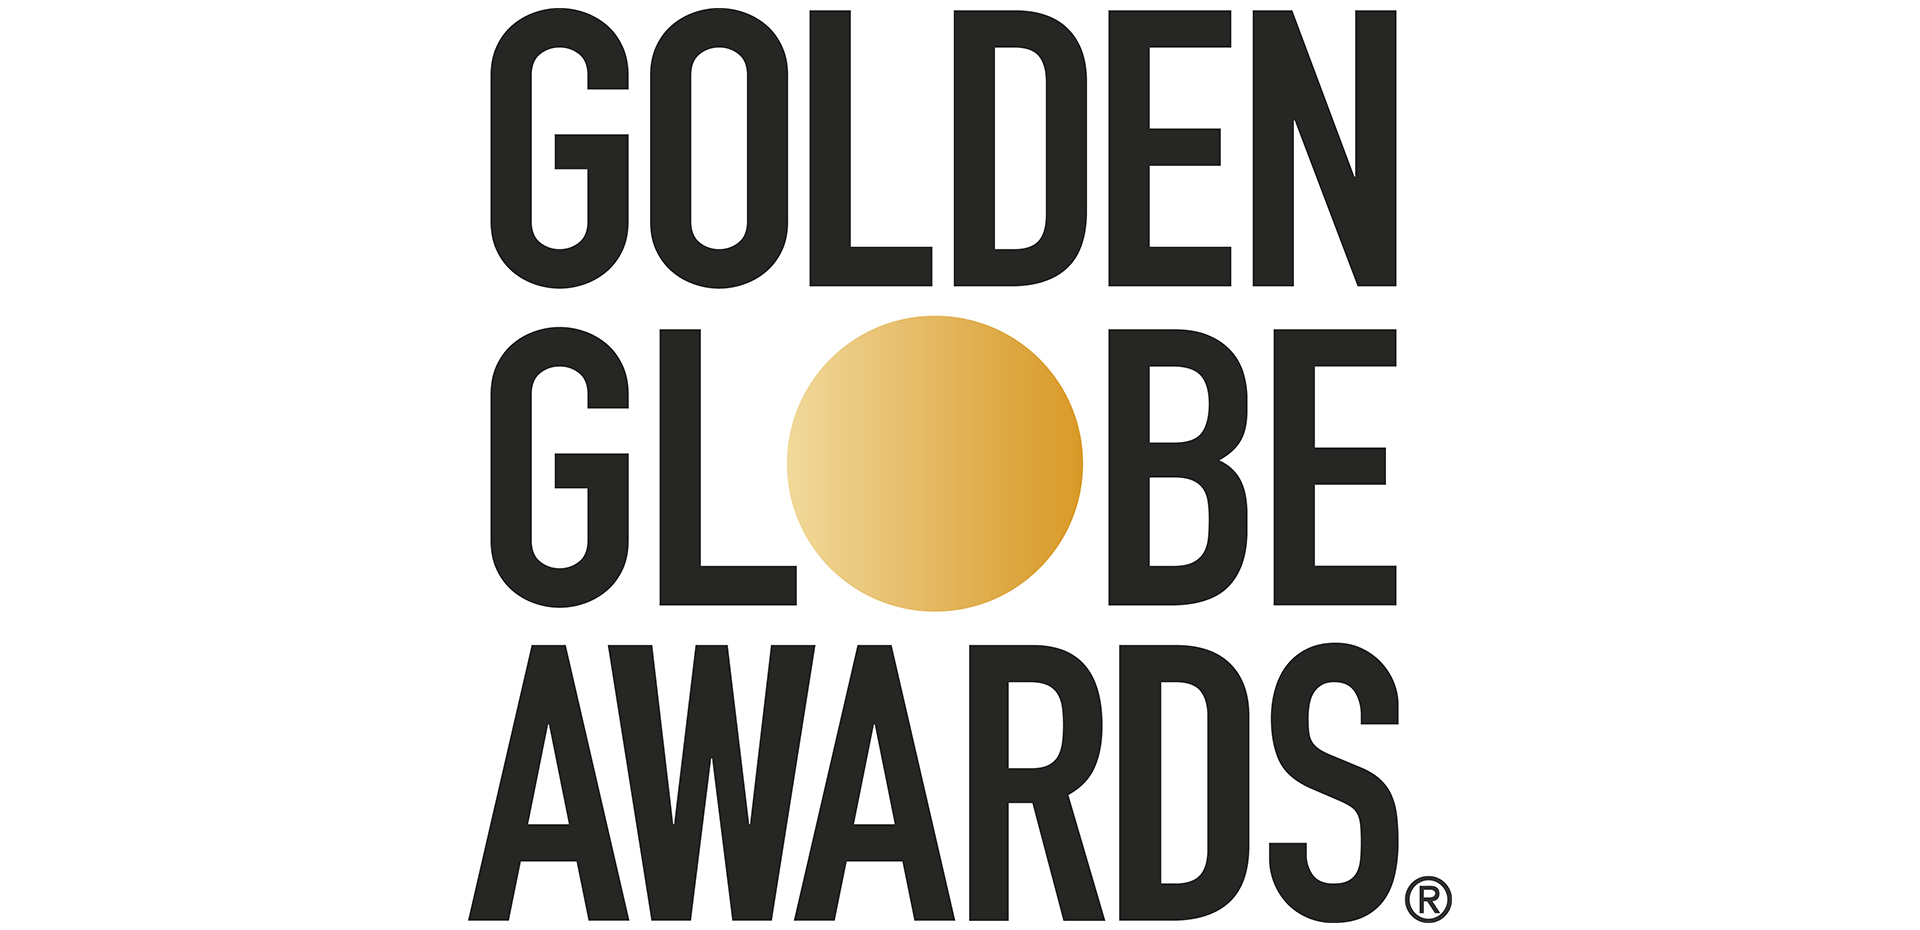 Golden-Globes-2020-Hero-Image-Template-The-Lede.jpg